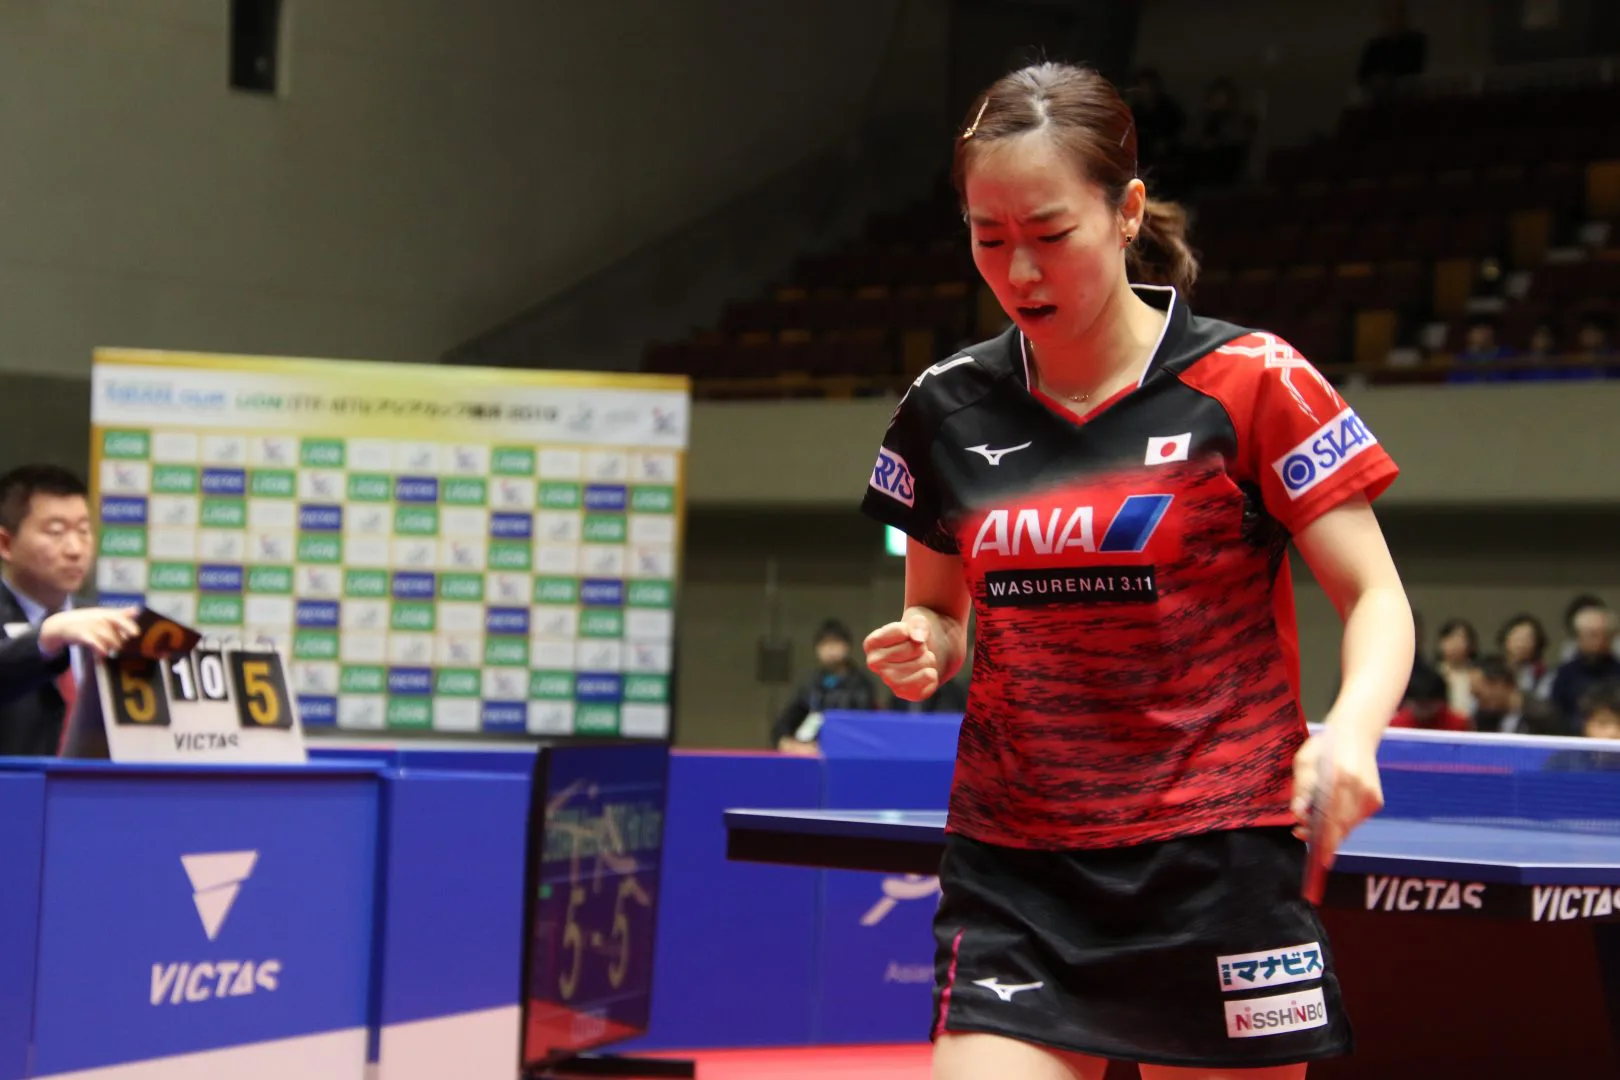 卓球 石川佳純が準決勝進出 アジアカップ女子 卓球メディア Rallys ラリーズ